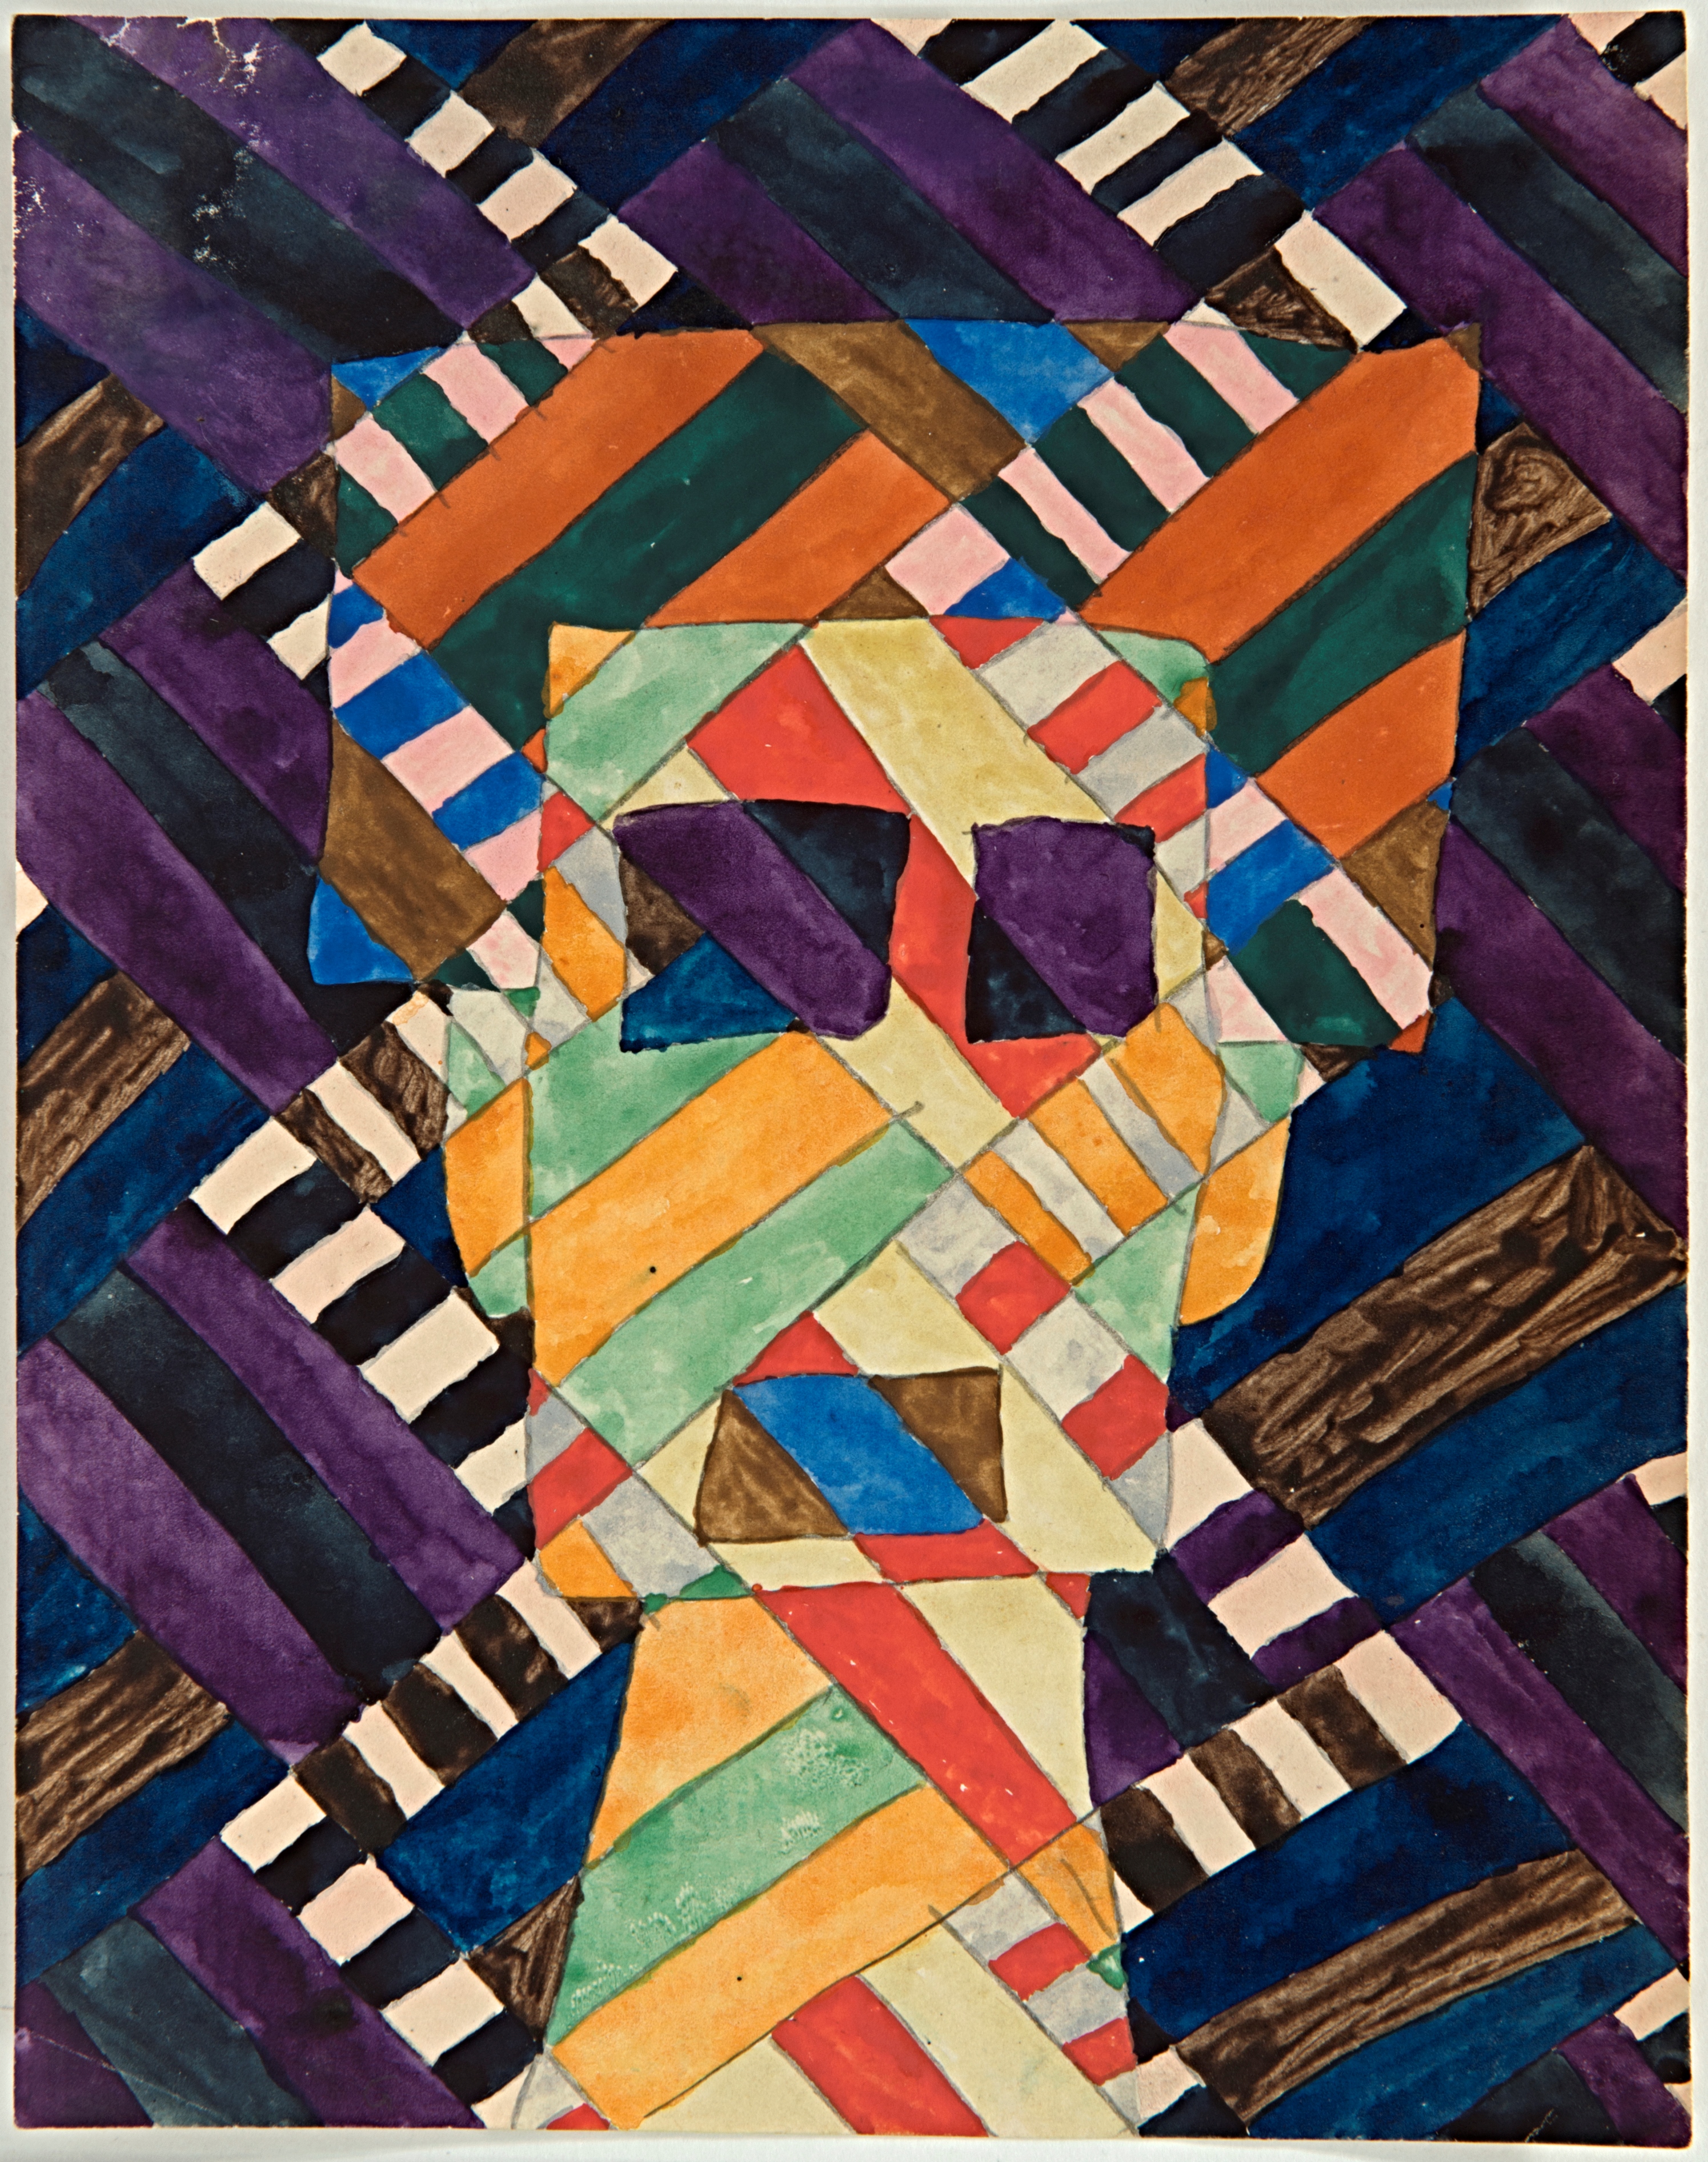 Paul Goesch, Kopf mit Farbteilung, um 1920, Berlinische Galerie, Urheberrechte am Werk erloschen, Repro: Kai-Annett Becker